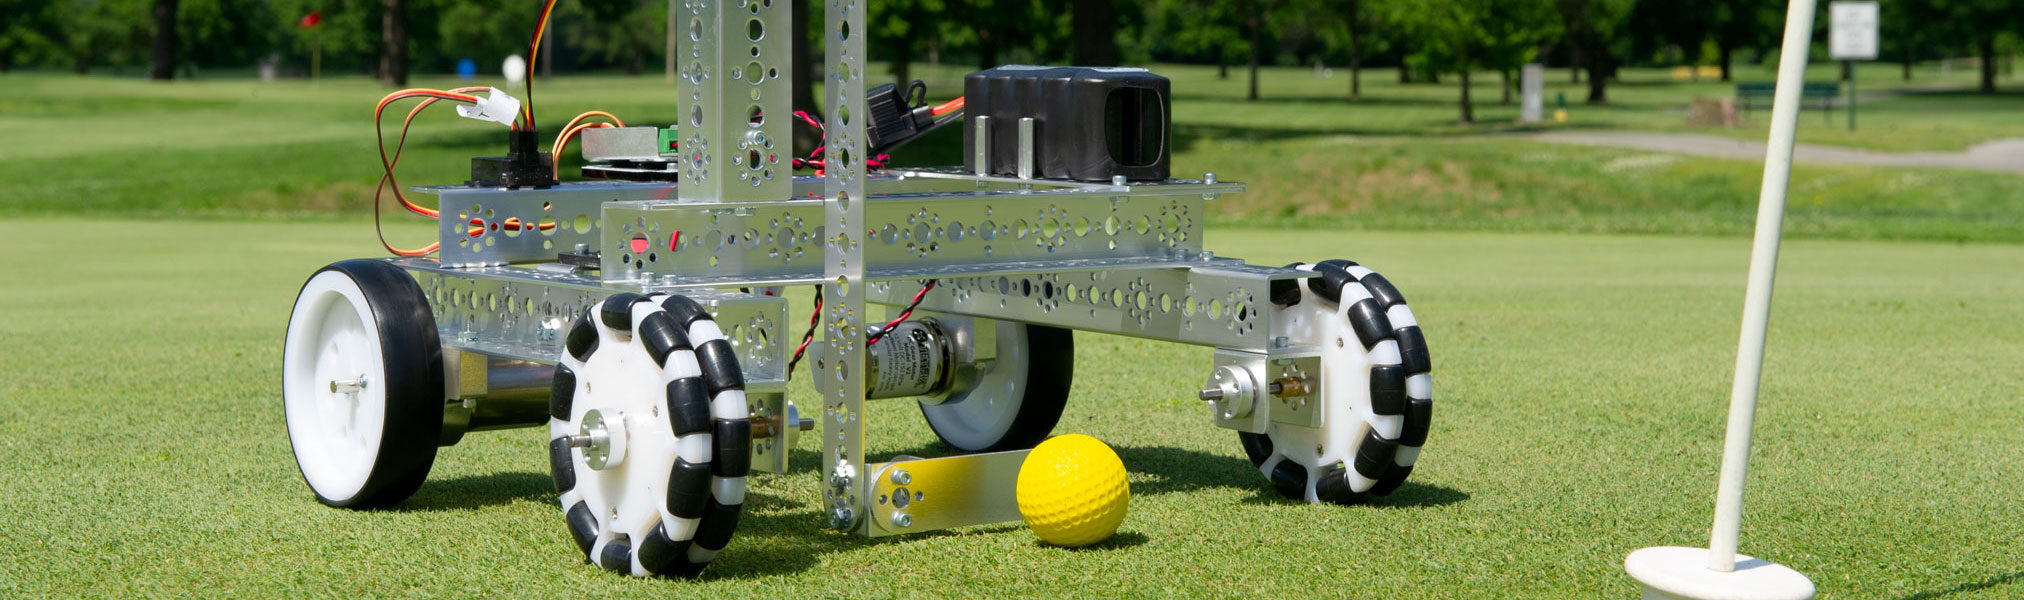 TETRIX Golf Robot